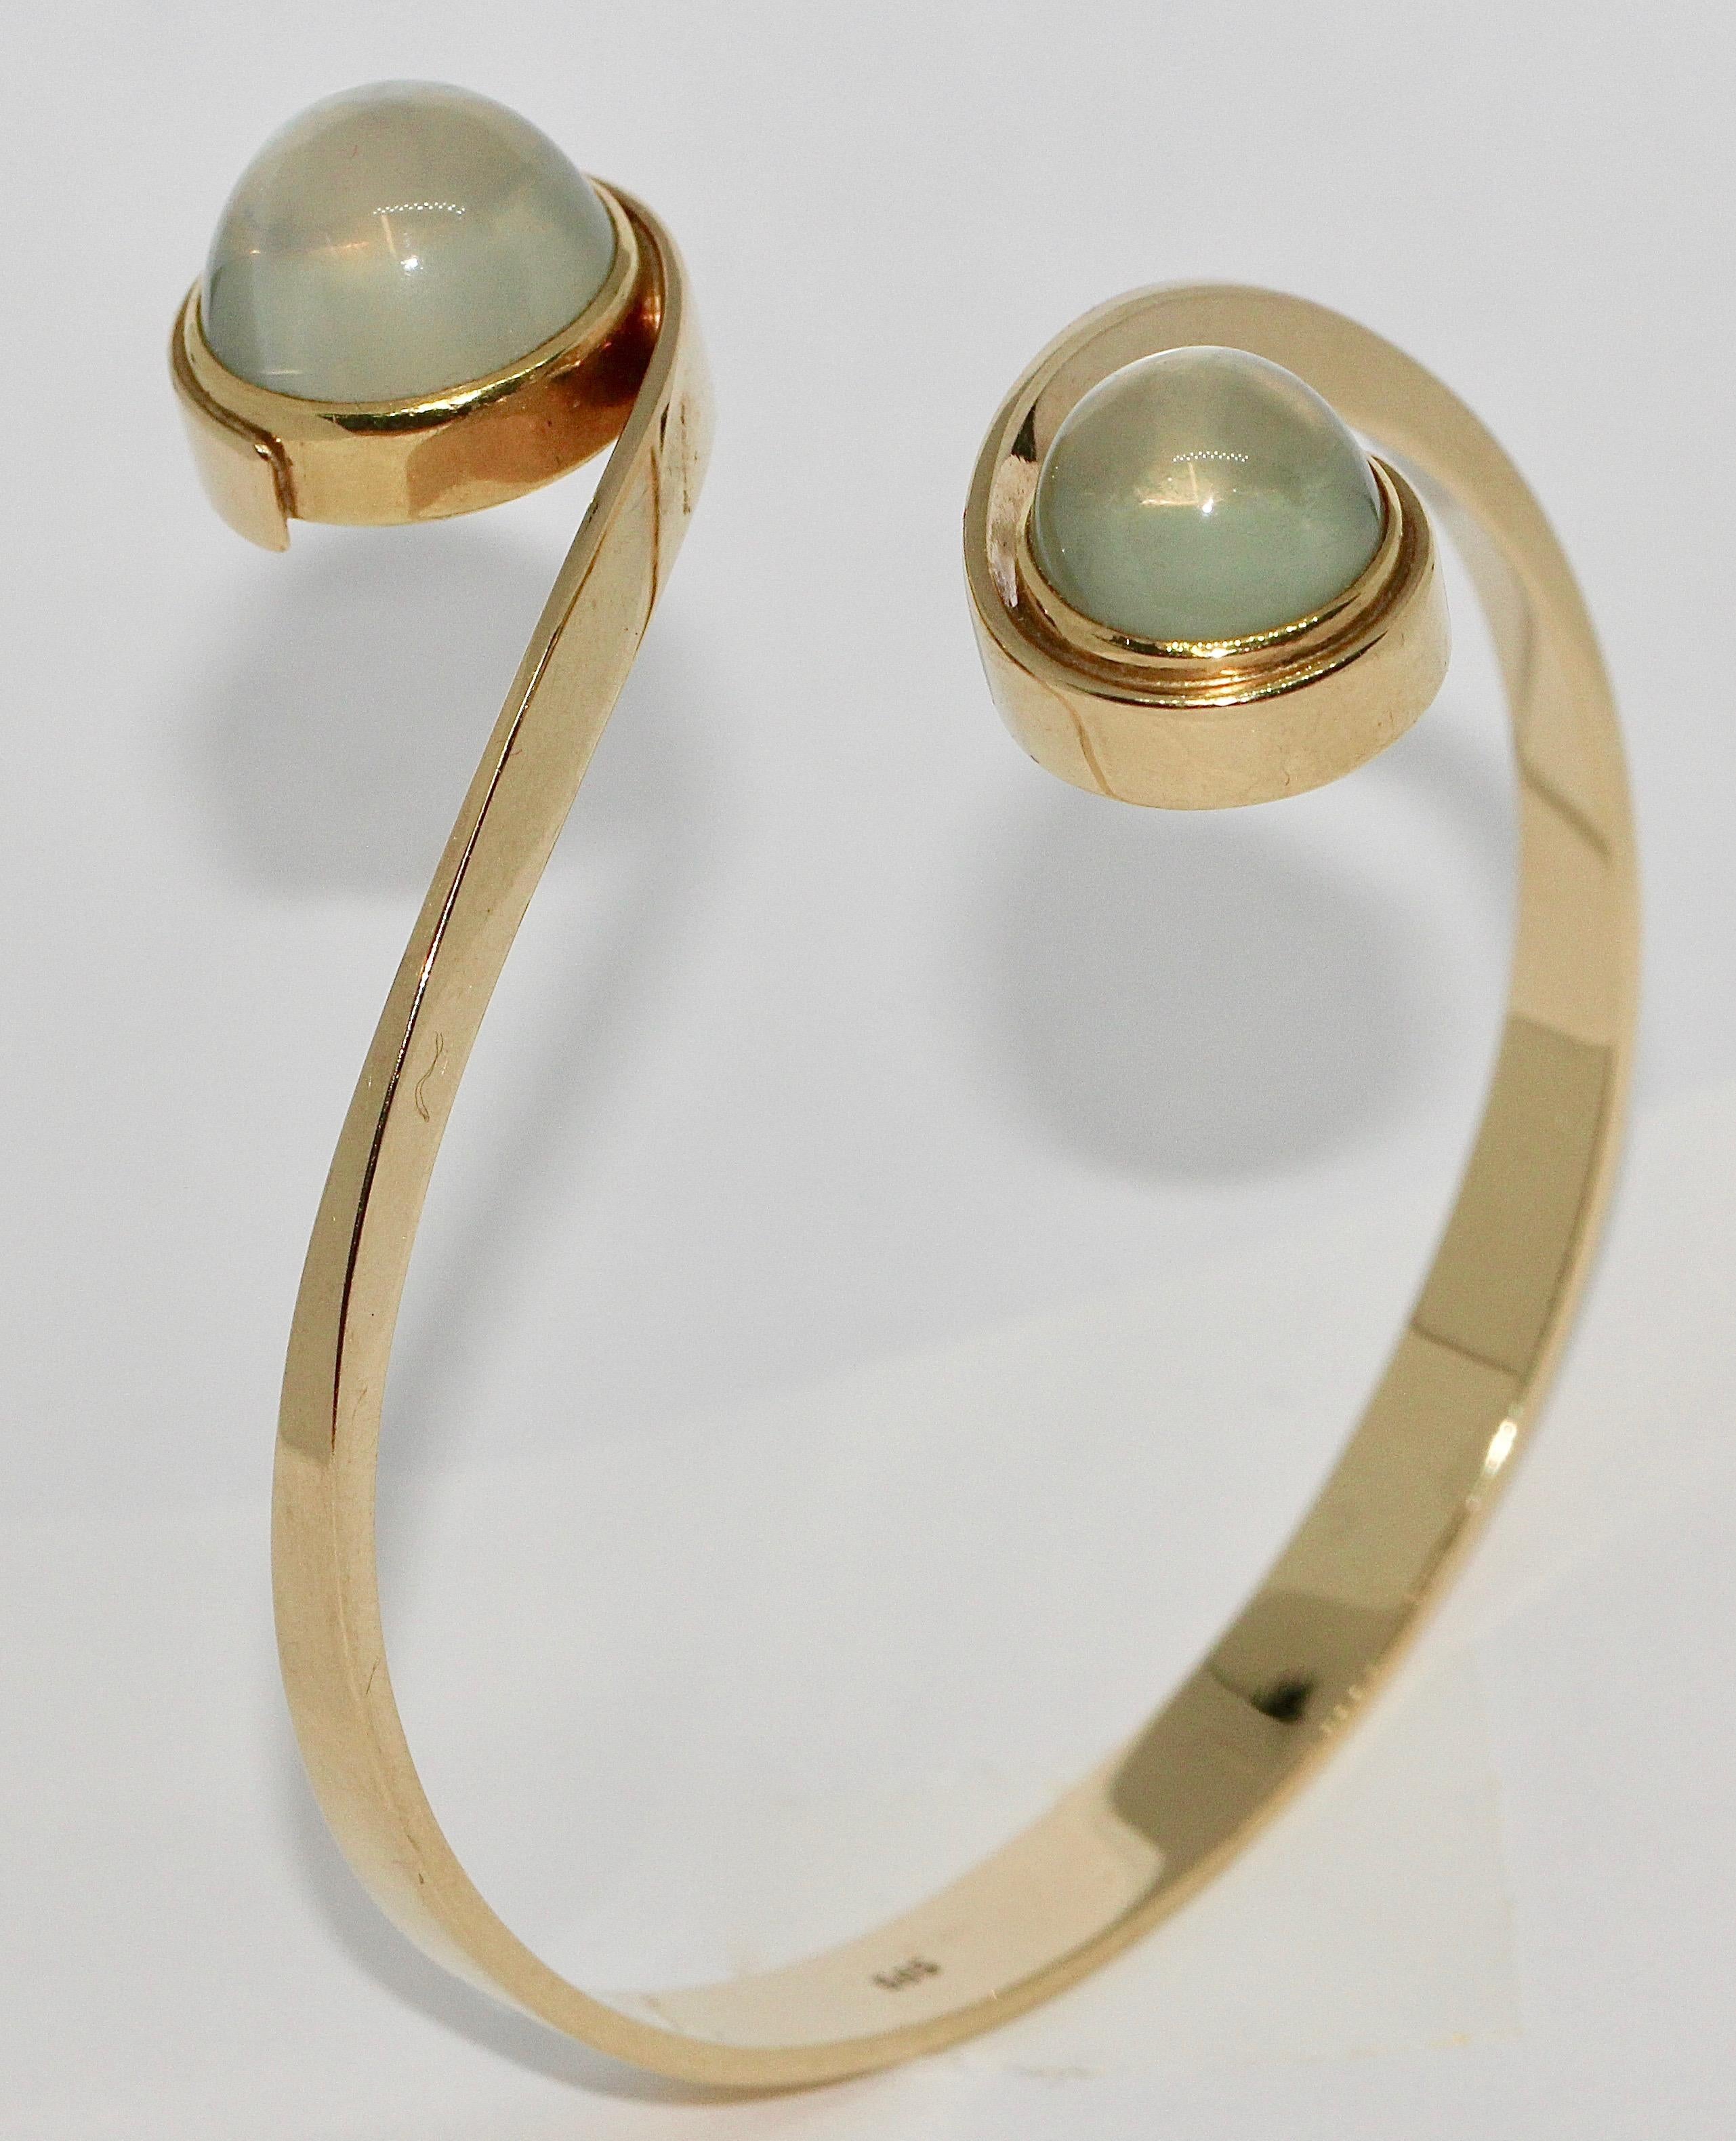 Sehr elegantes Damenarmband, 14 Karat Gold mit Mondsteinen.

Gepunzt.

Den passenden Ring finden Sie auch in unseren Angeboten.